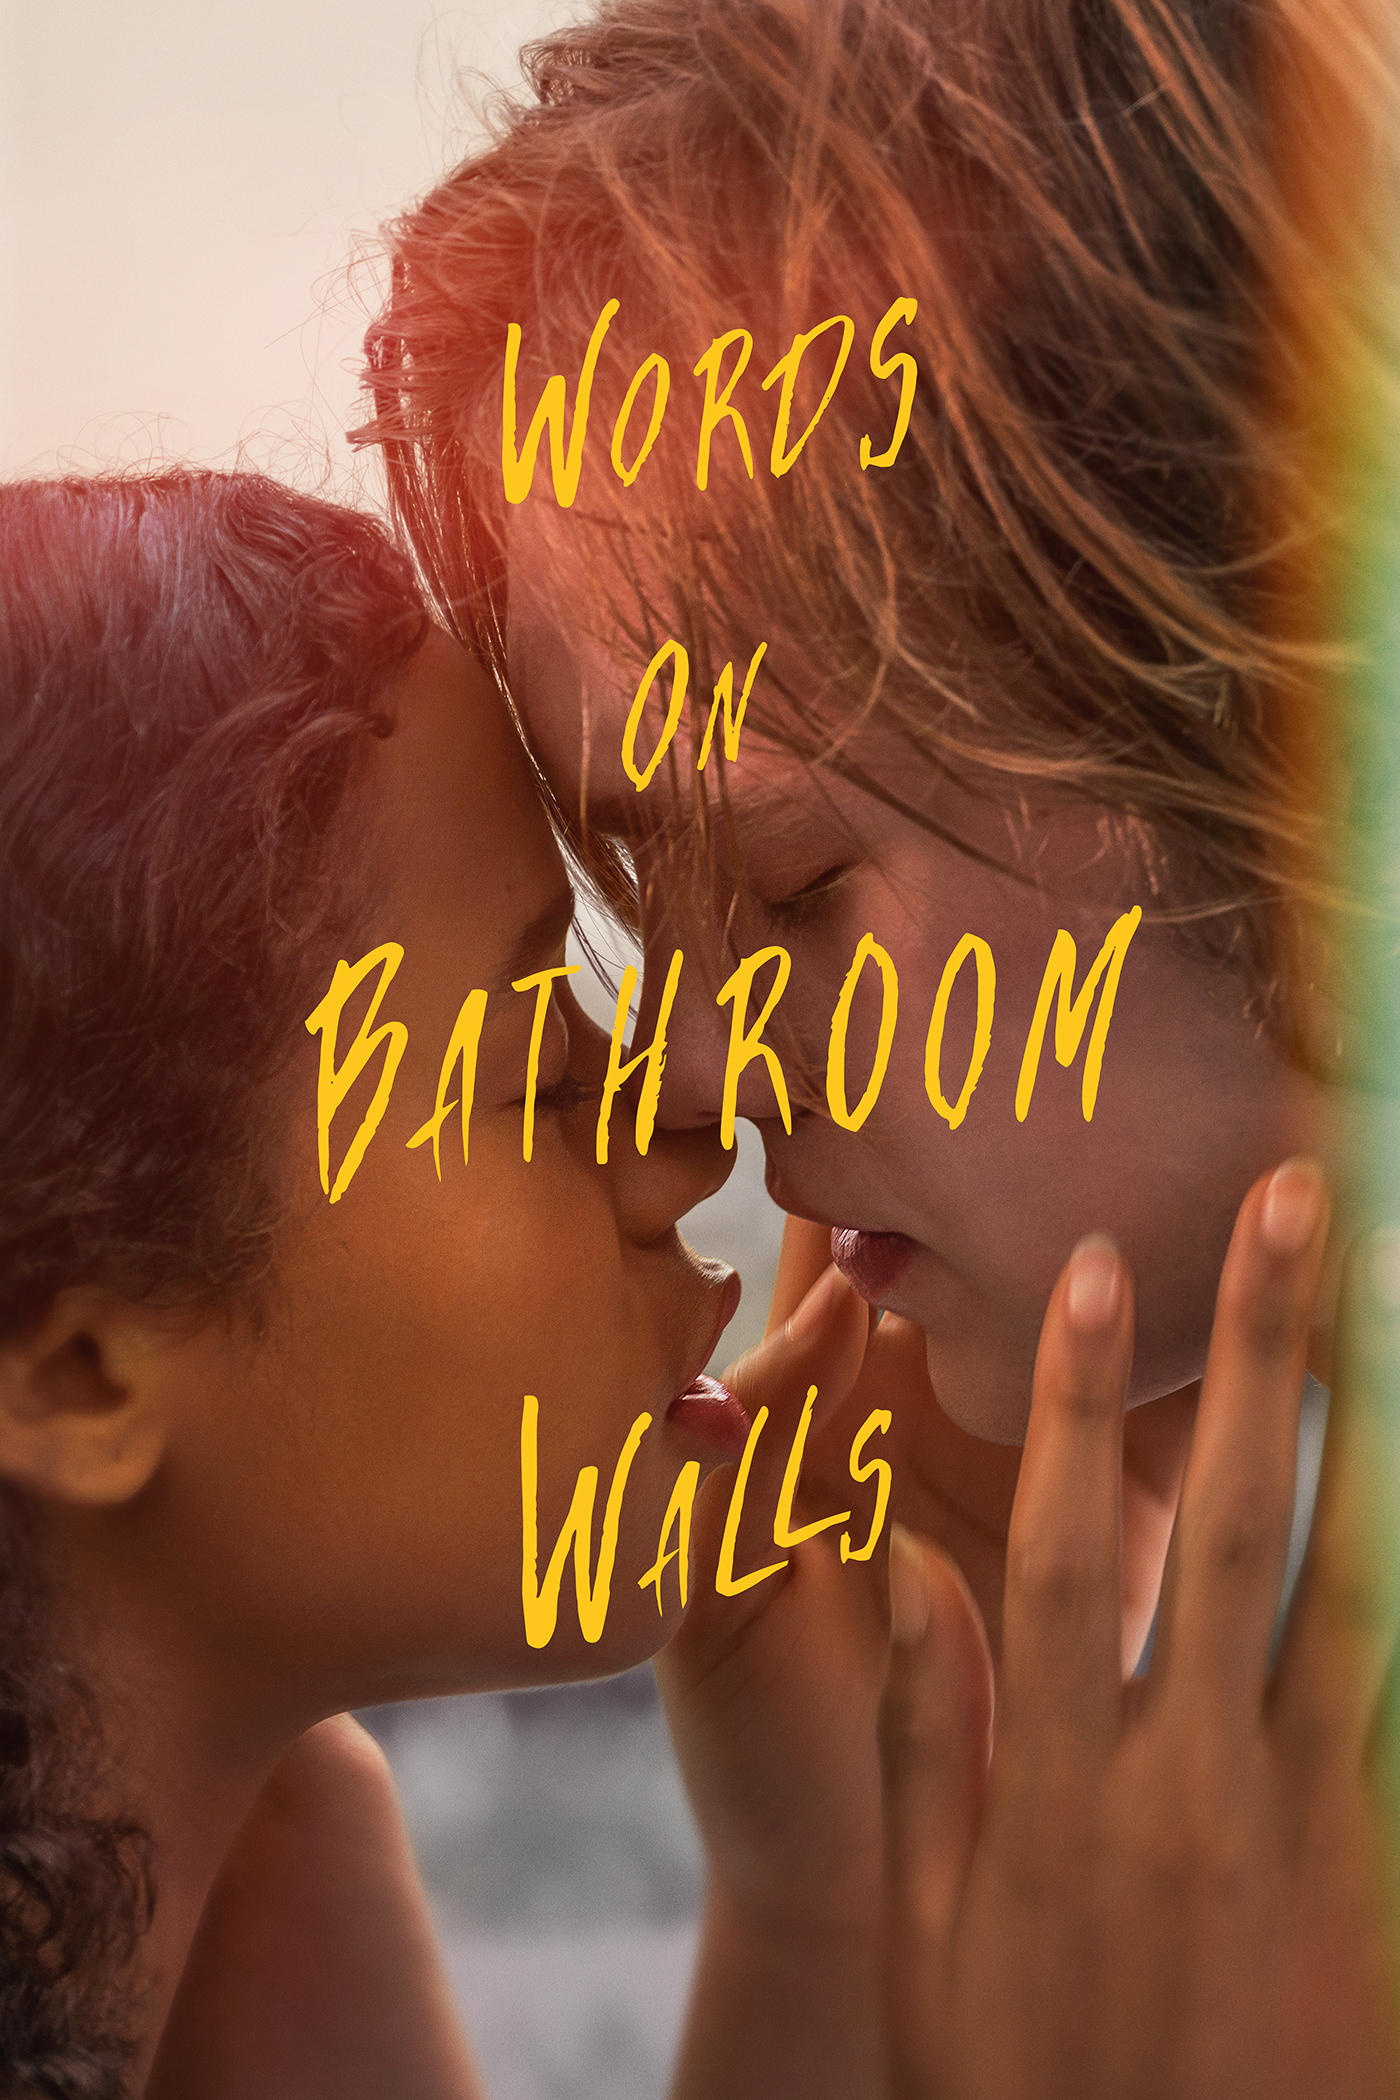 words on bathroom walls